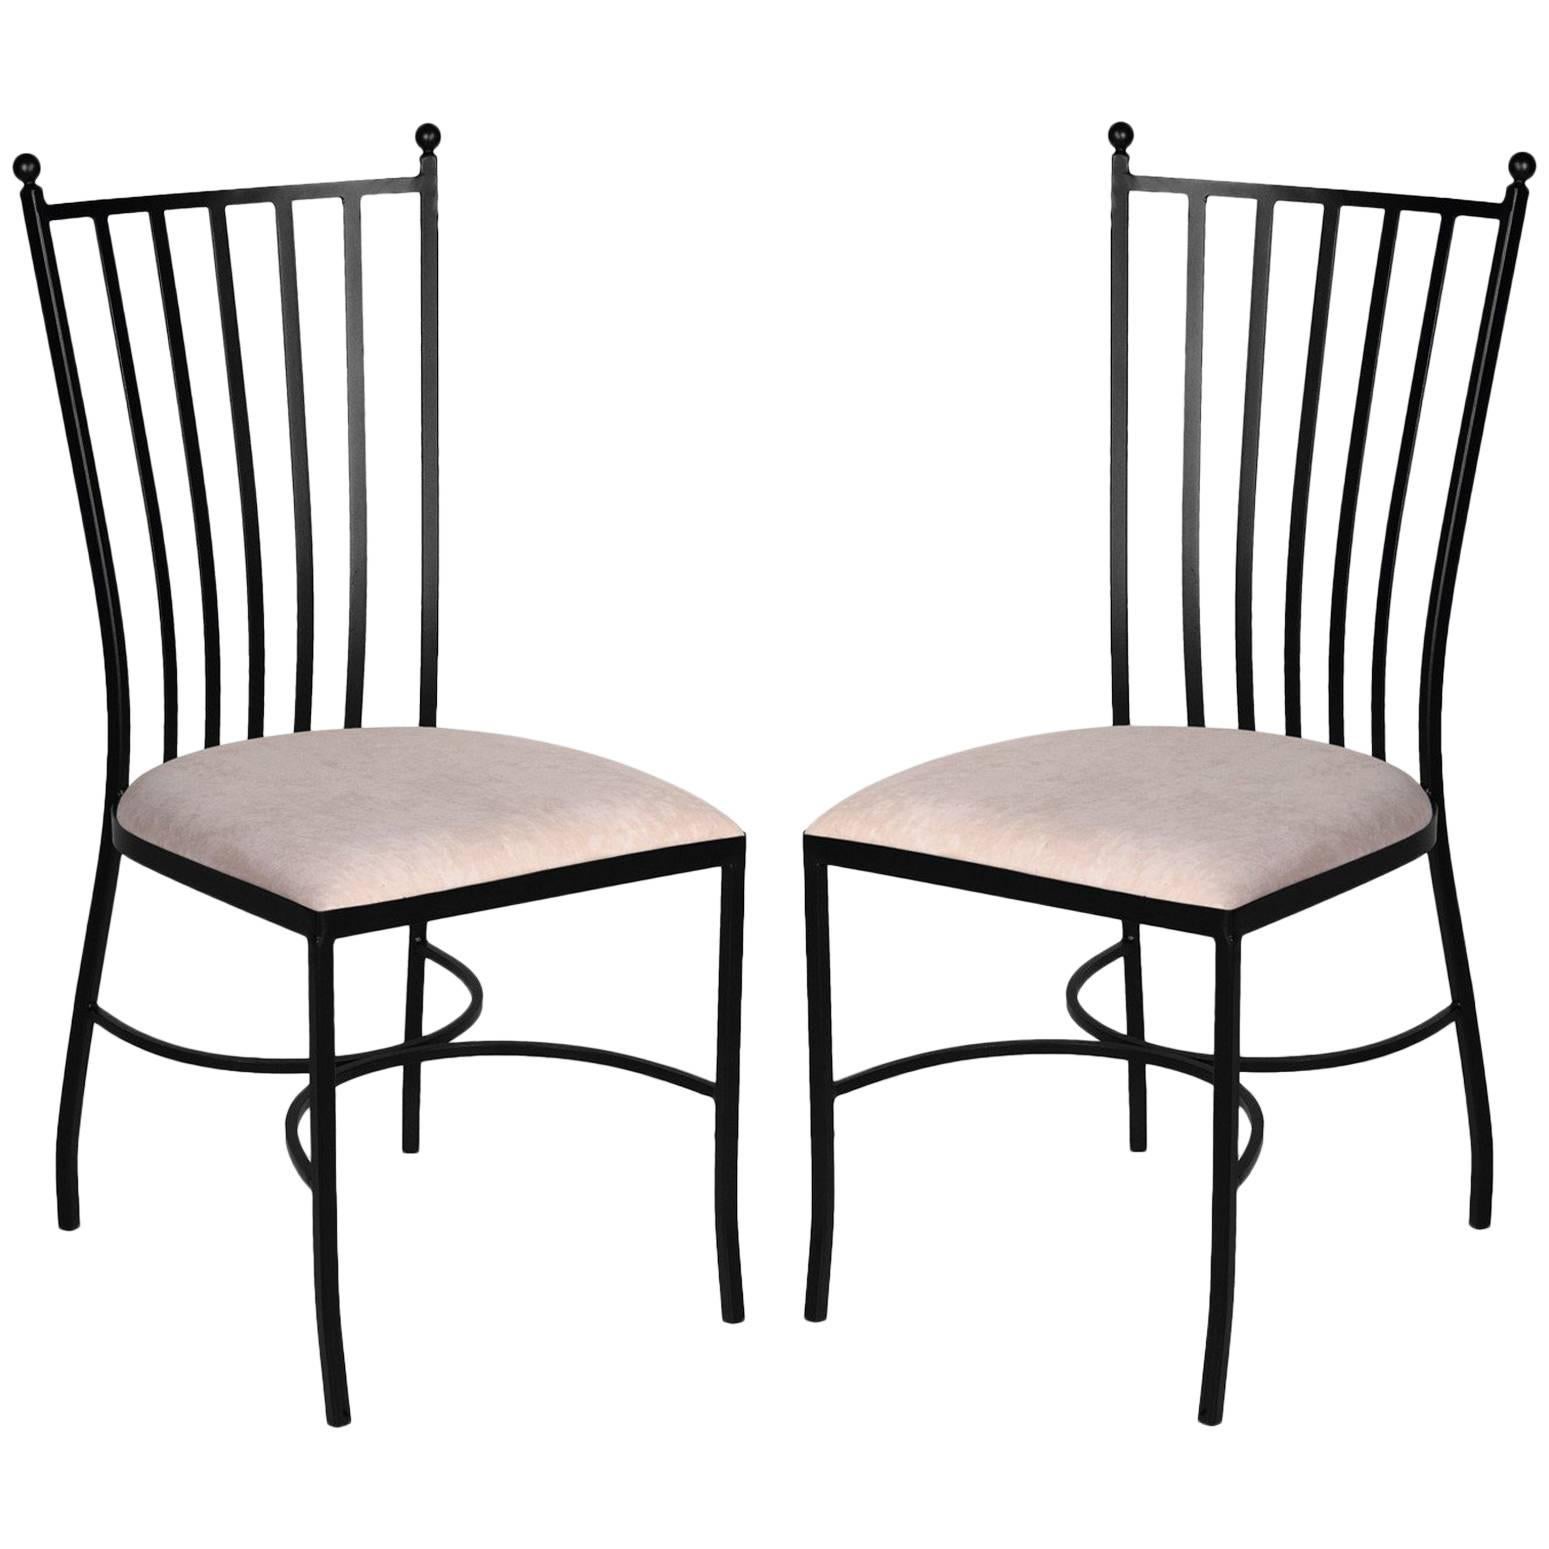 Garden Chairs in Wrought Iron. Indoor & Outdoor